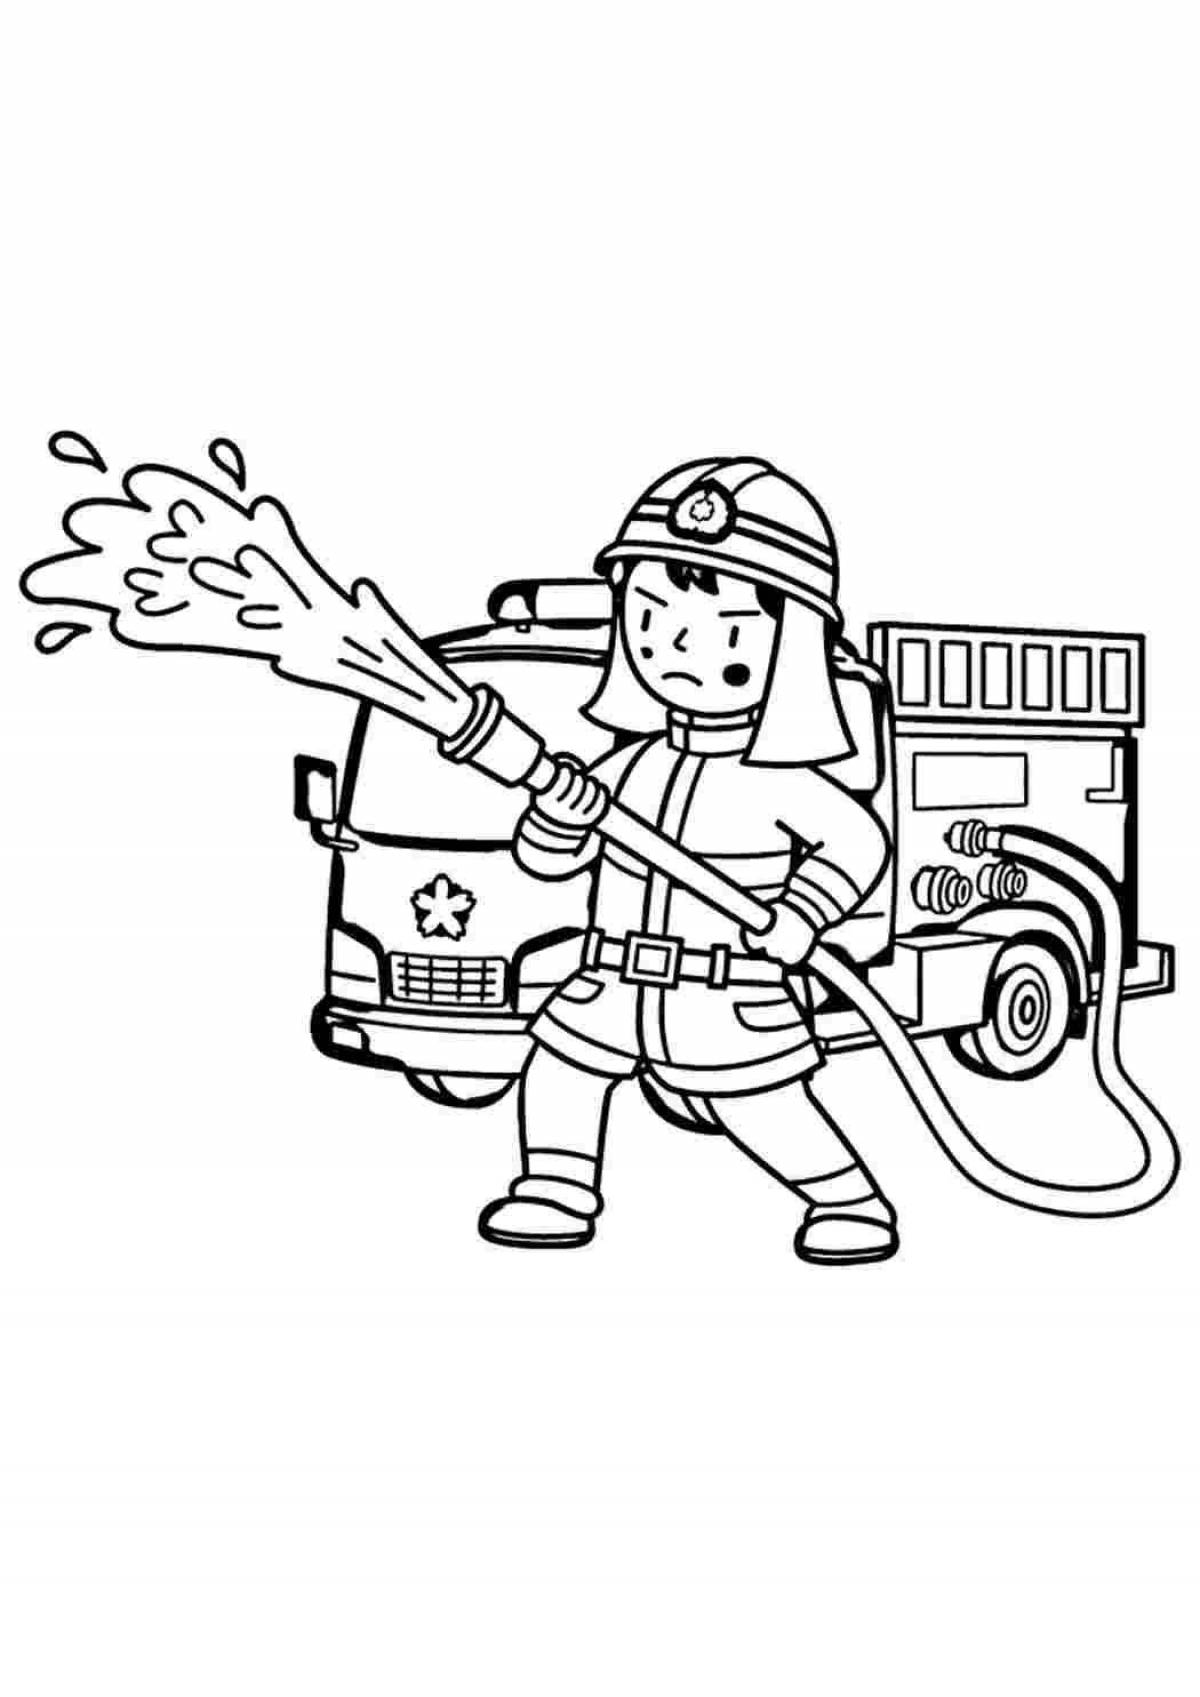 Развлекательный рисунок пожарного для детей